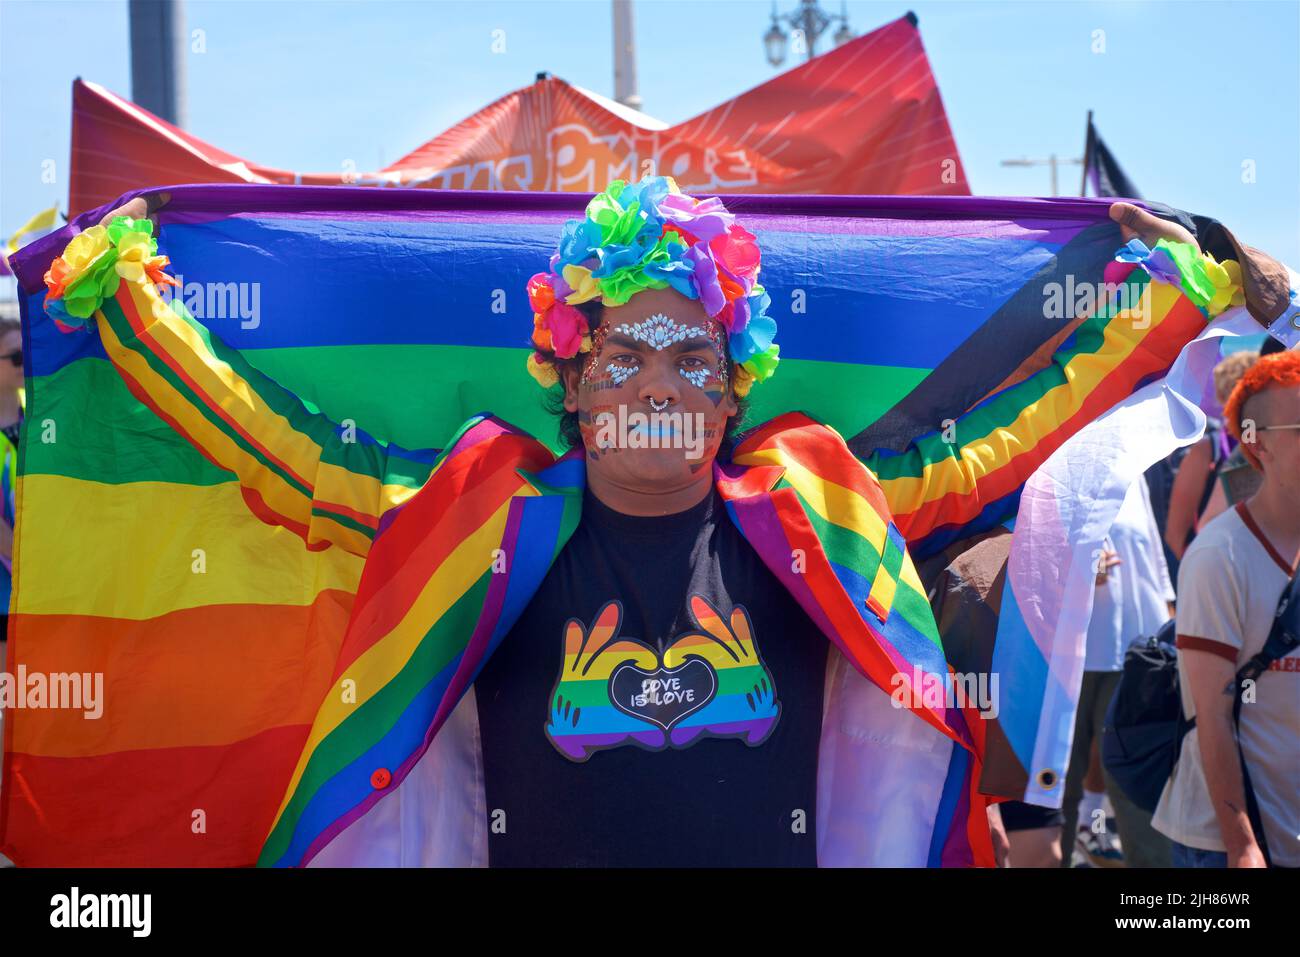 La marche de protestation TRANS Pride Brighton & Hove se fait le long du front de mer, Brighton & Hove. Un participant coloré s'arrête pour prendre une photo. 16 juillet 2022. Credit: J. Marshall / Alamy Live News Banque D'Images